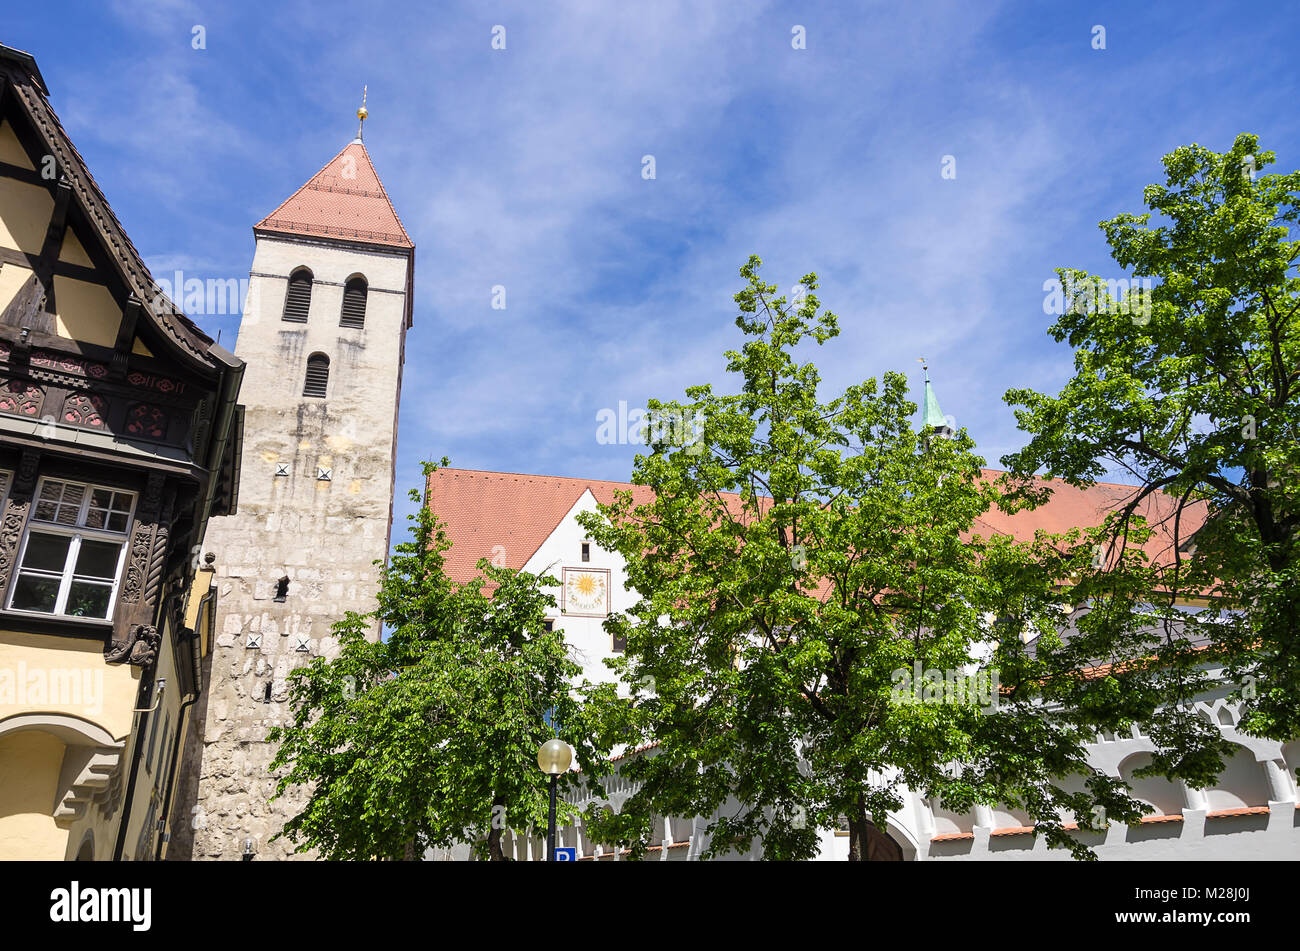 L'architecture médiévale et la tour en Kapellengasse ruelle dans la vieille ville de Ratisbonne, Bavière, Allemagne. Banque D'Images